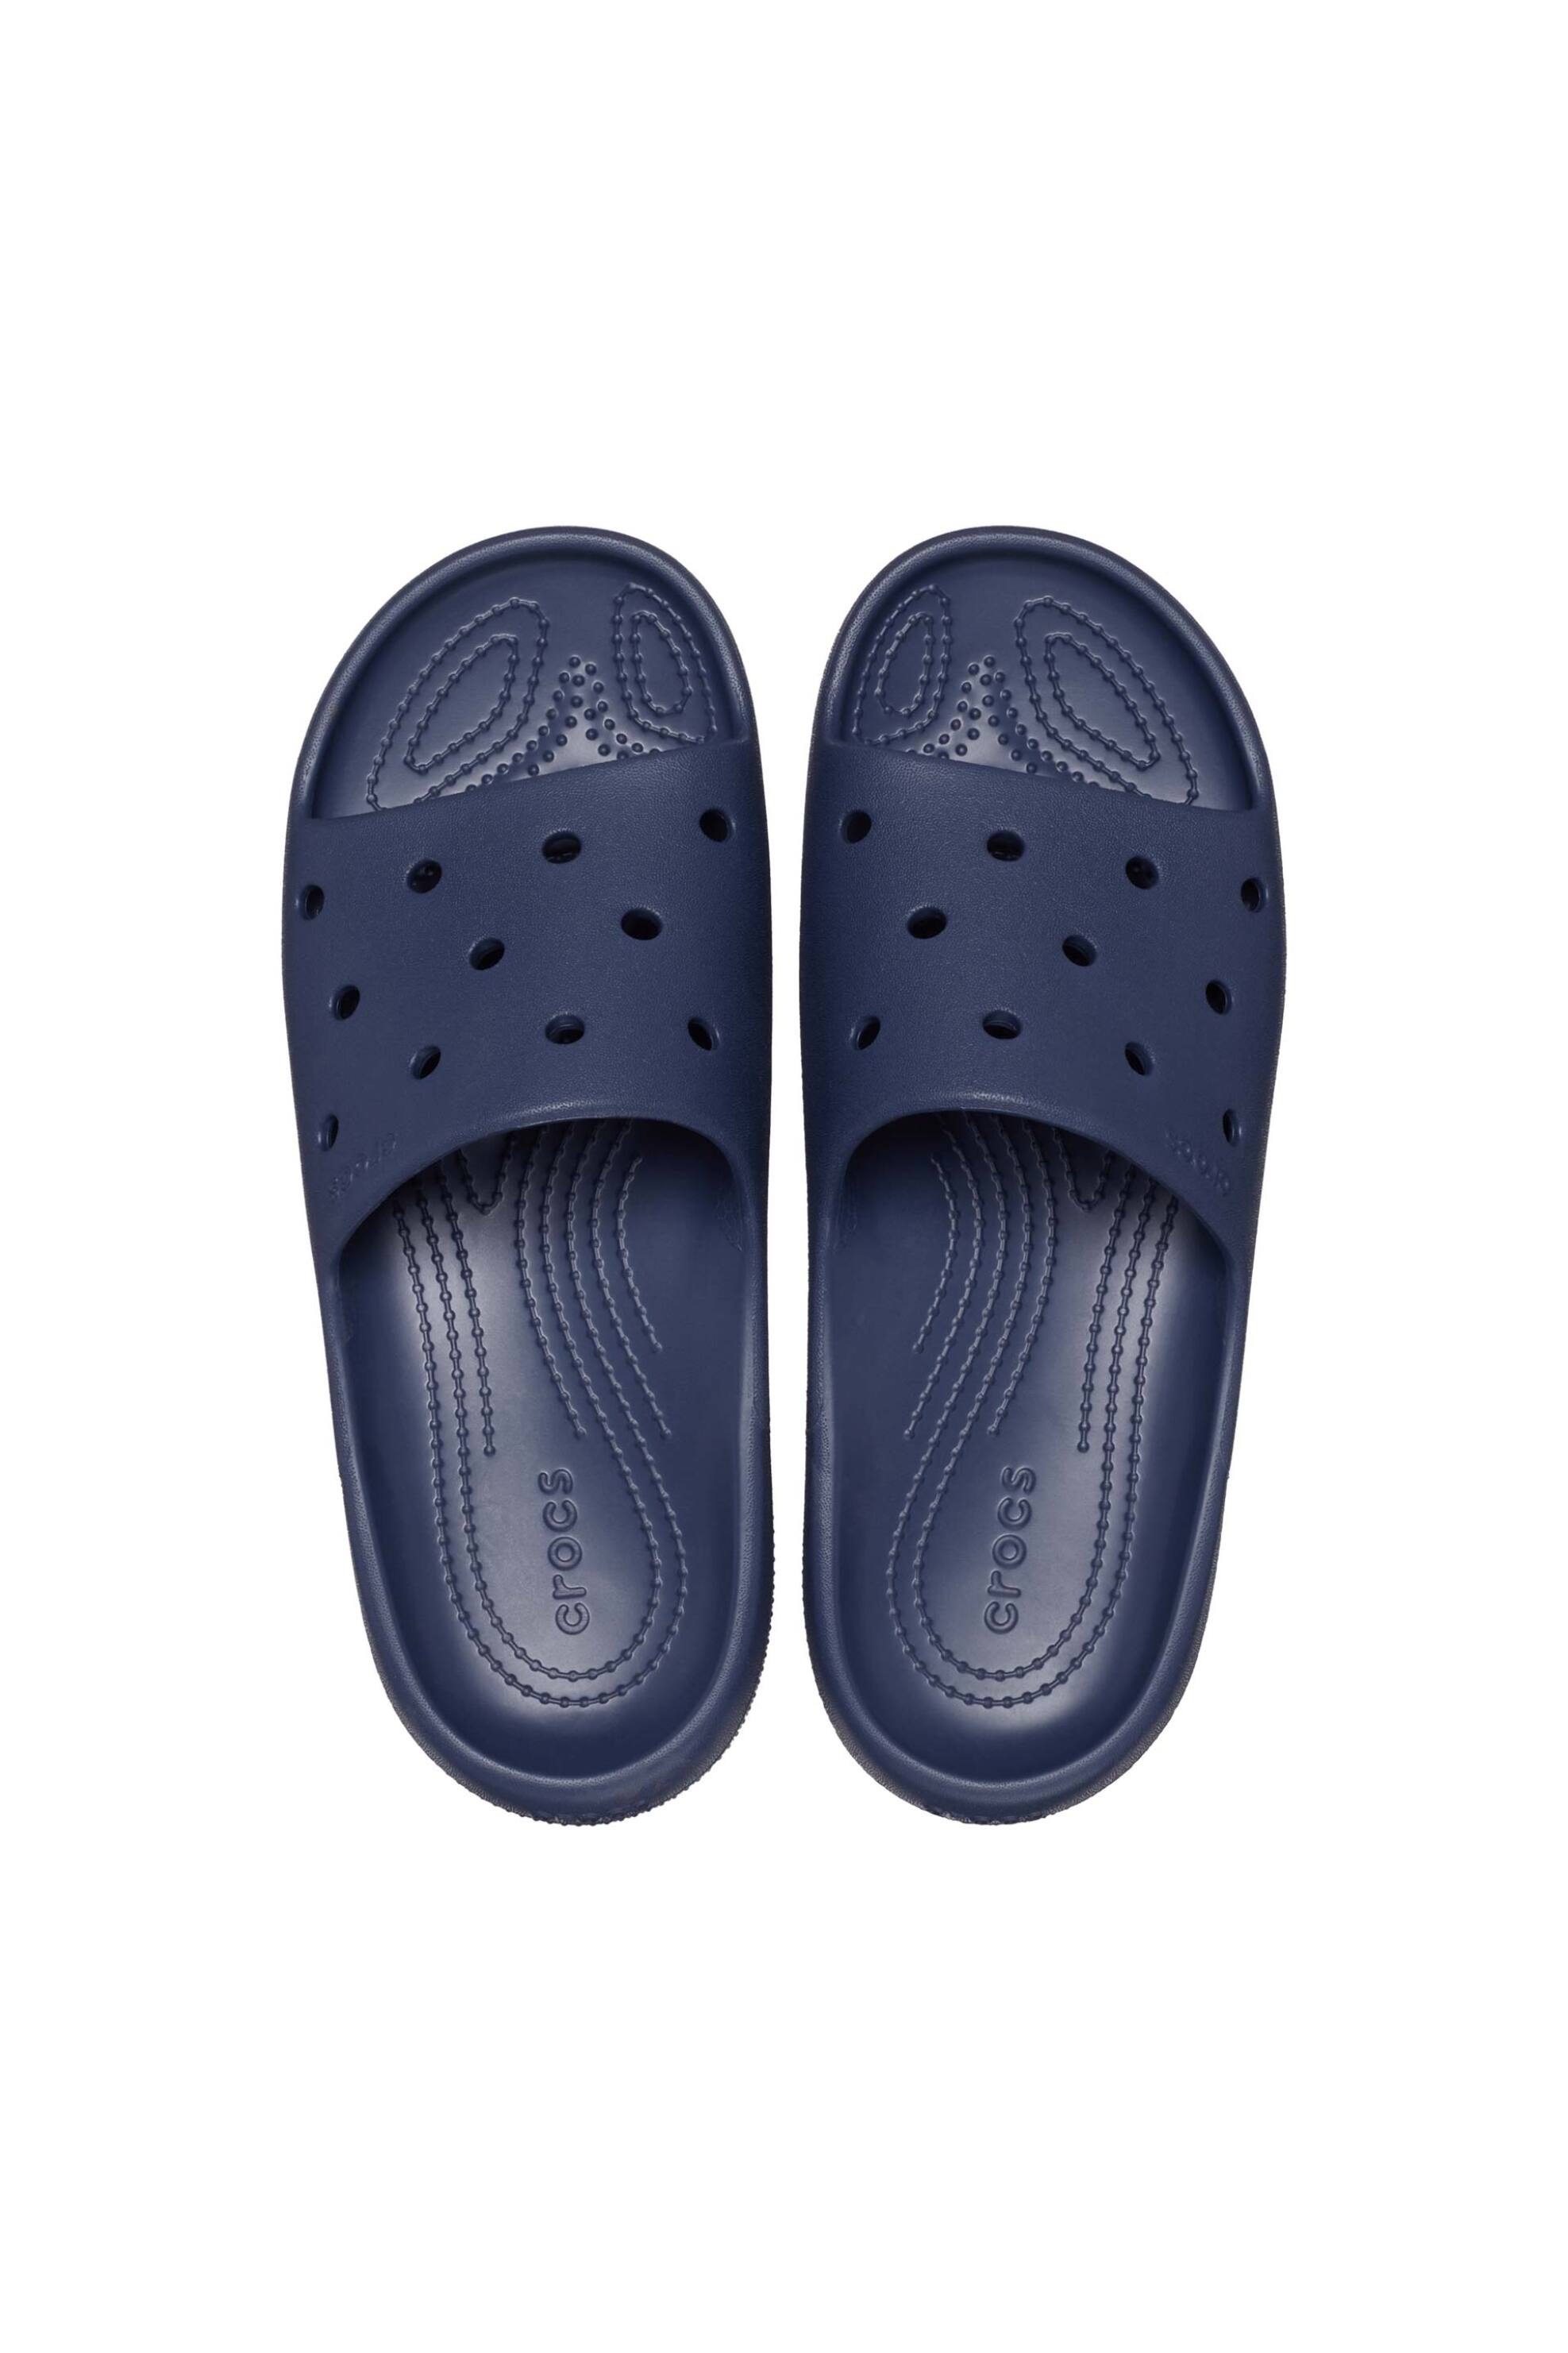 Ανδρική Μόδα > Ανδρικά Παπούτσια > Ανδρικές Παντόφλες & Σαγιονάρες Crocs unisex σαγιονάρες "Getaway Strappy" - E61129 Μπλε Σκούρο